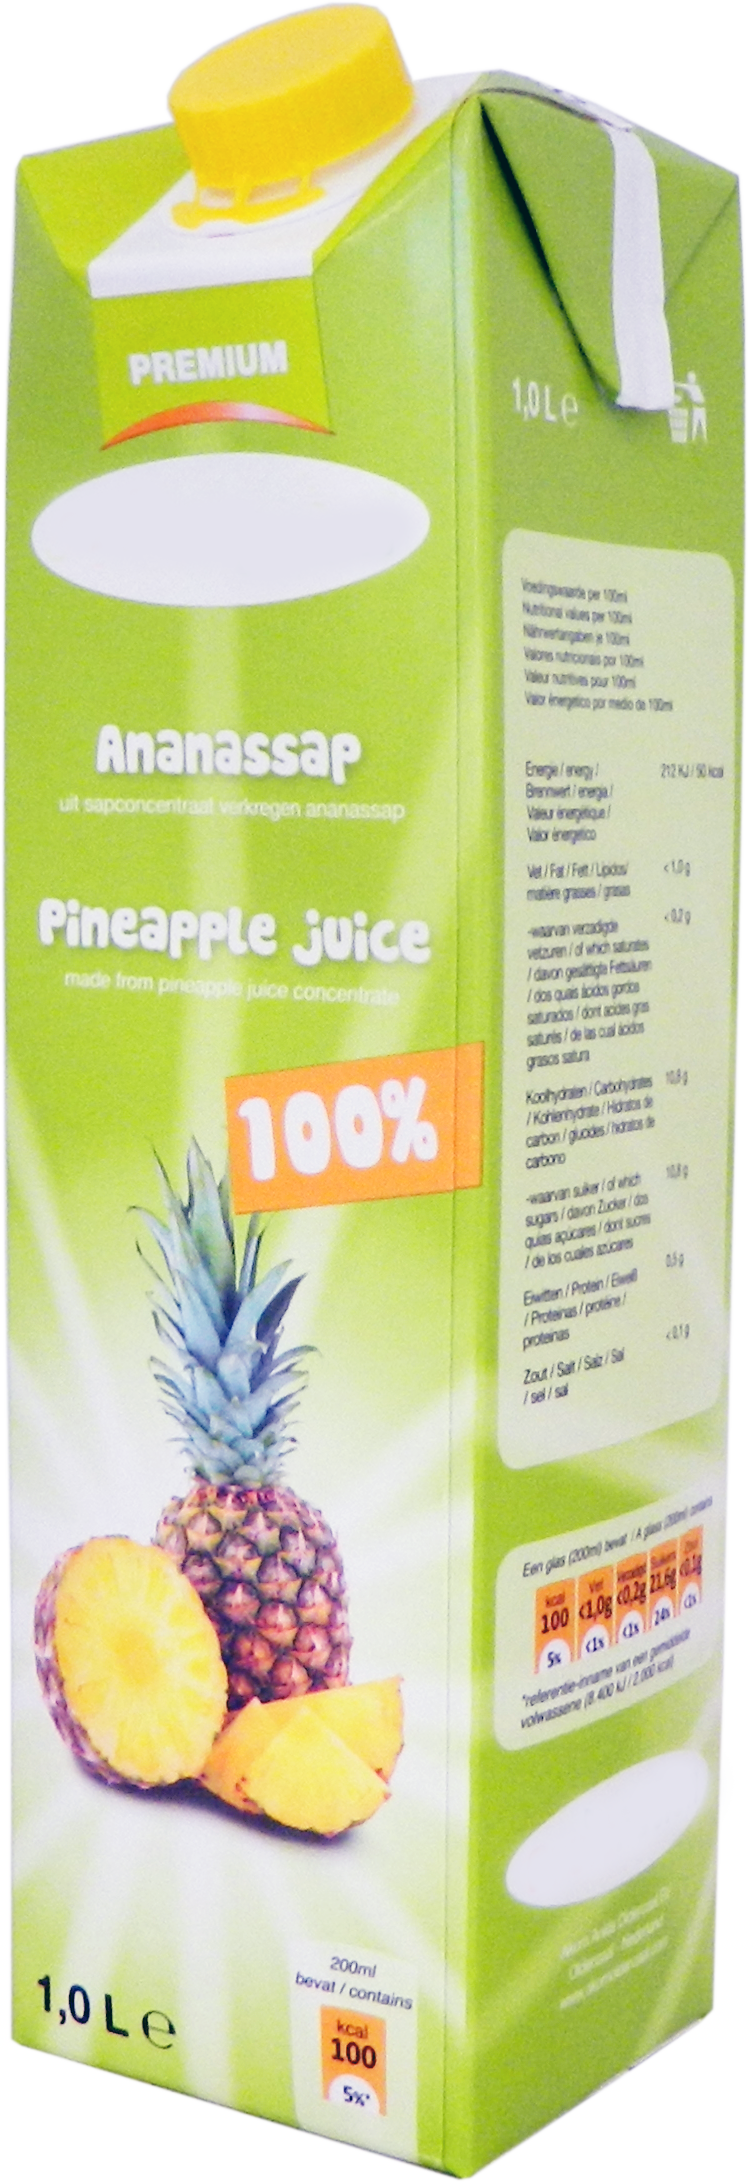 Premium Ananassap 1,0 liter